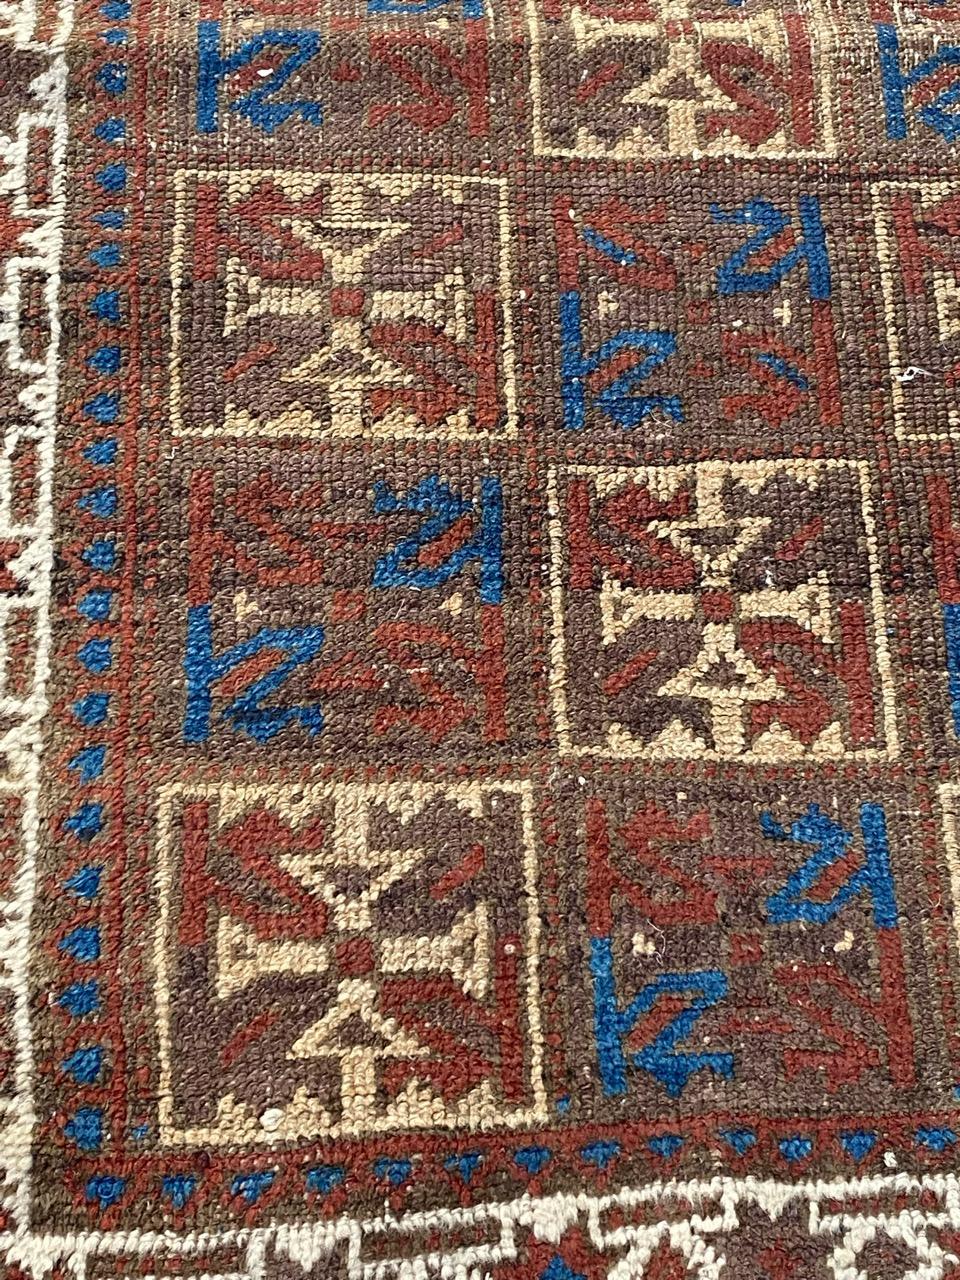 Sehr schöner Belutsch-Teppich aus dem späten 19. Jahrhundert mit schönem geometrischem Muster und schönen natürlichen Farben, komplett handgeknüpft mit Wollsamt auf Wollfond.

✨✨✨
